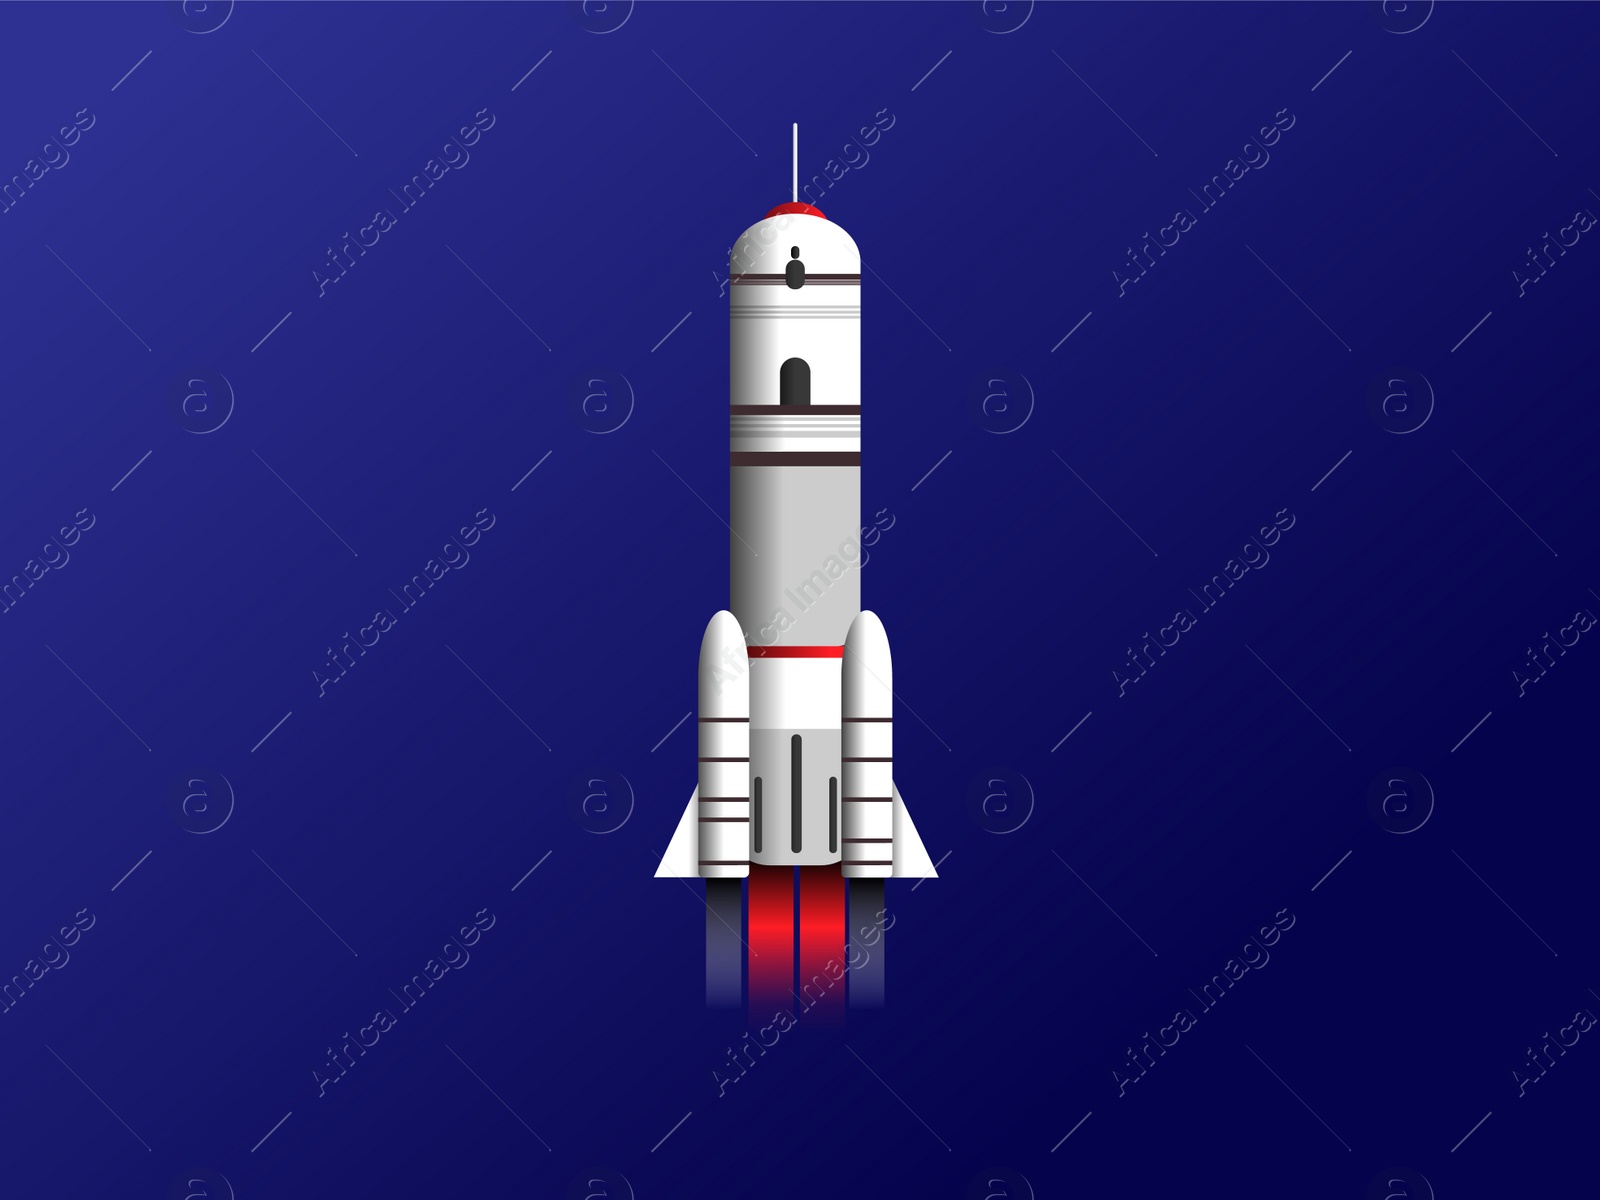 Illustration of Modern rocket model illustration on blue background